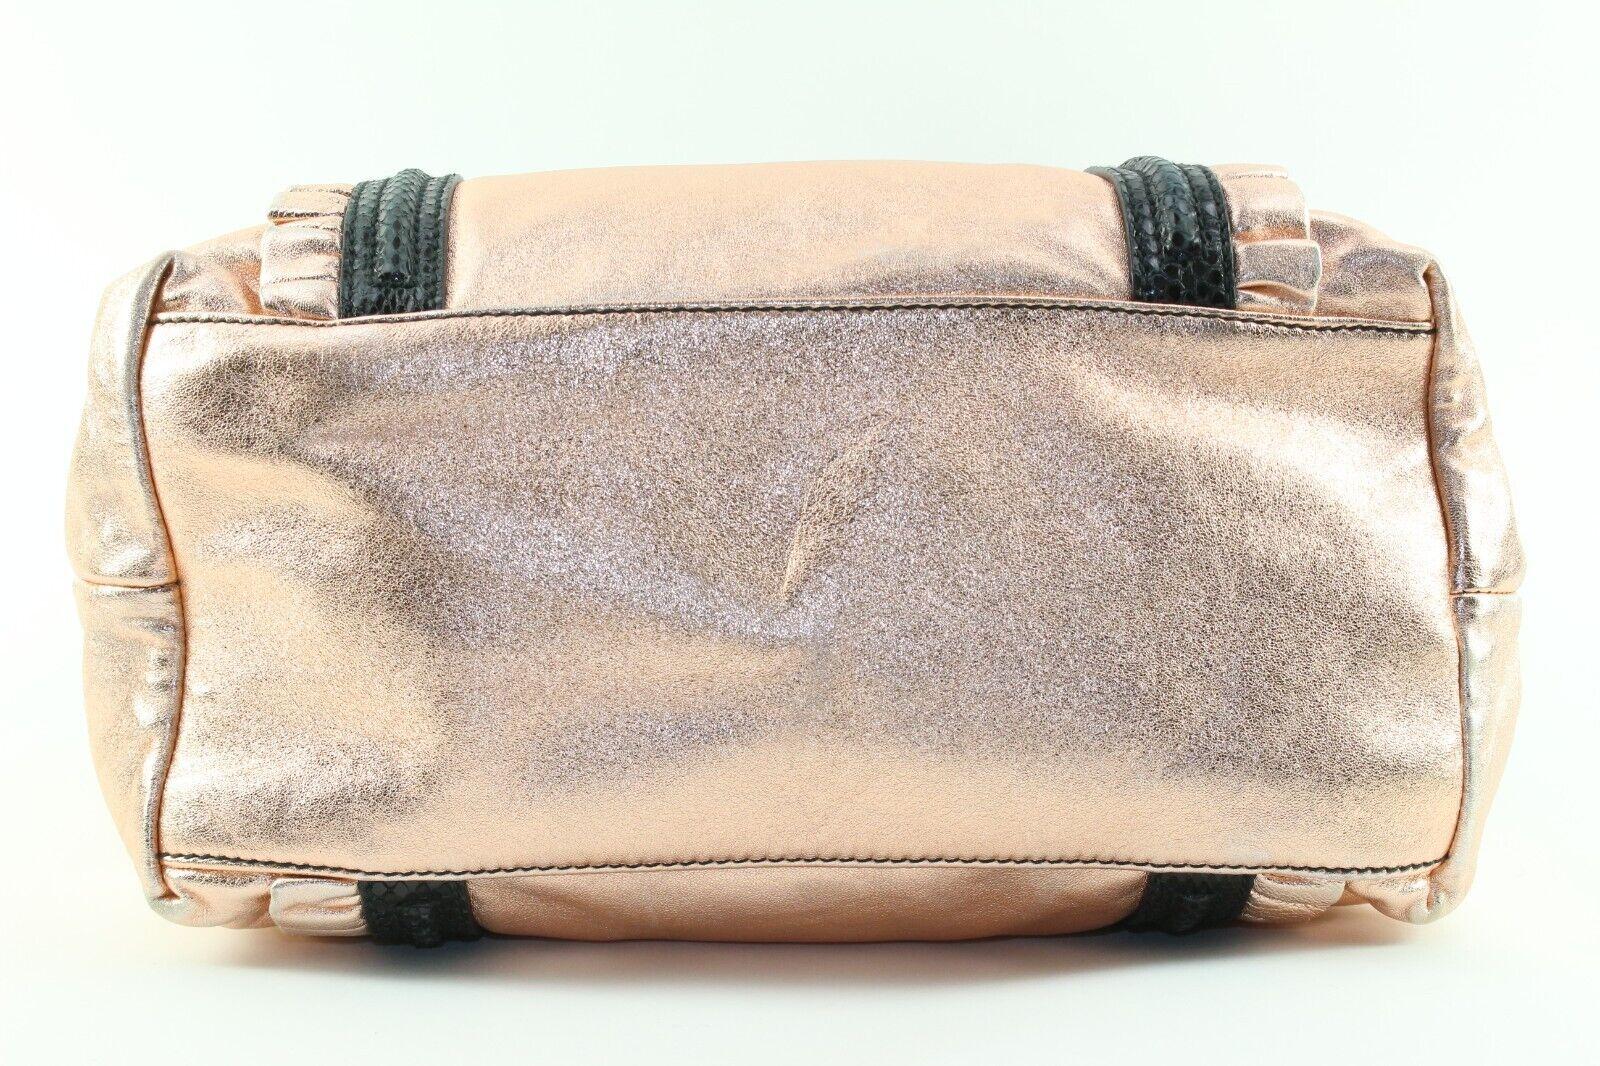 DOLCE & GABBANA Rose Gold Metallic Leather Shoulder Bag 4DG1226K For Sale 7